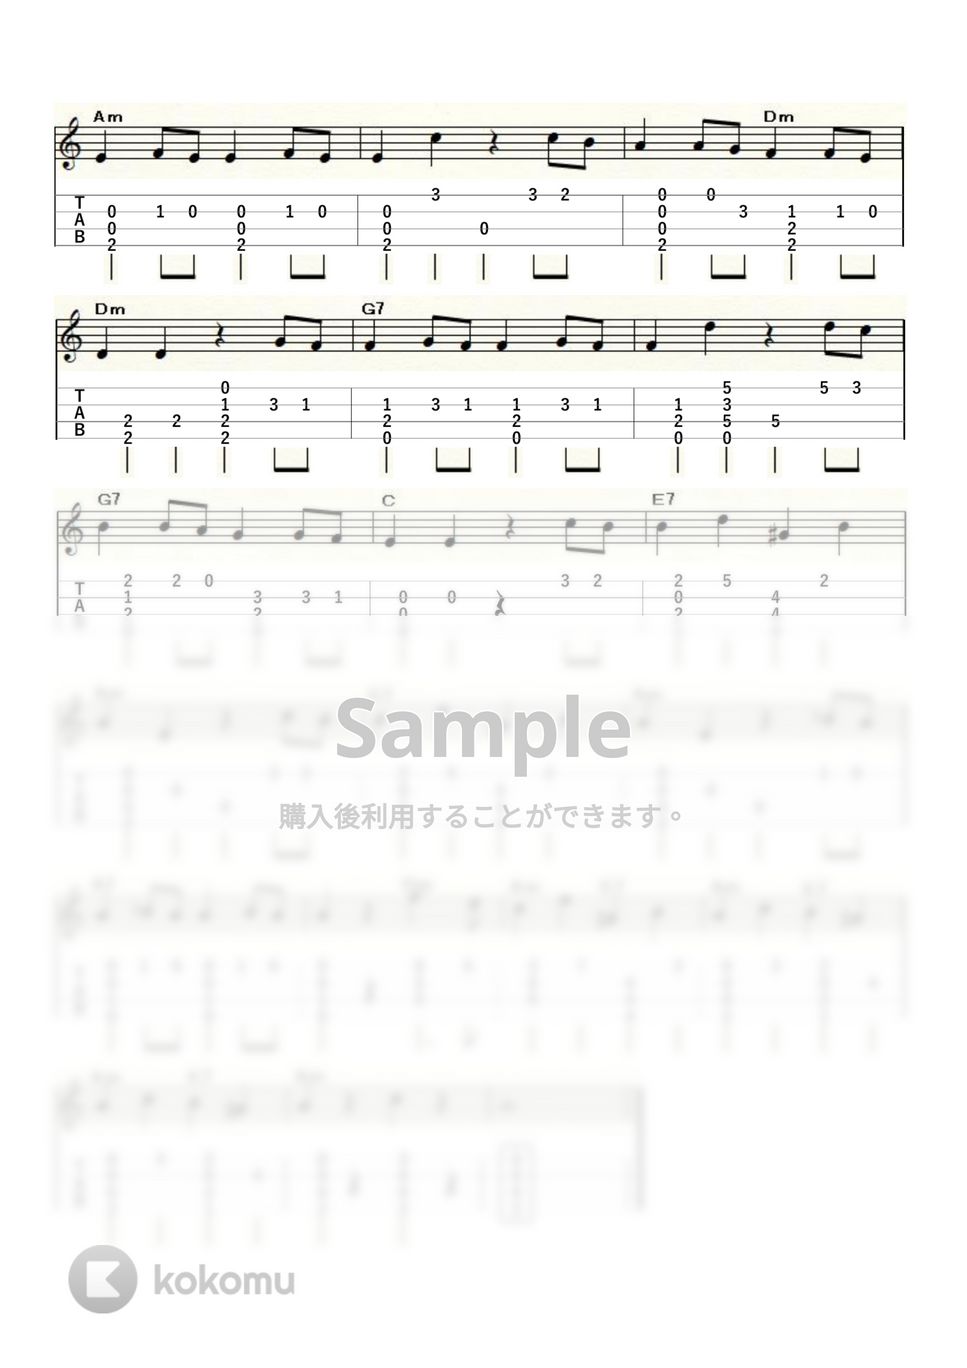 モーツァルト - モーツァルトの交響曲40番 (ｳｸﾚﾚｿﾛ / High-G,Low-G / 中級) by ukulelepapa